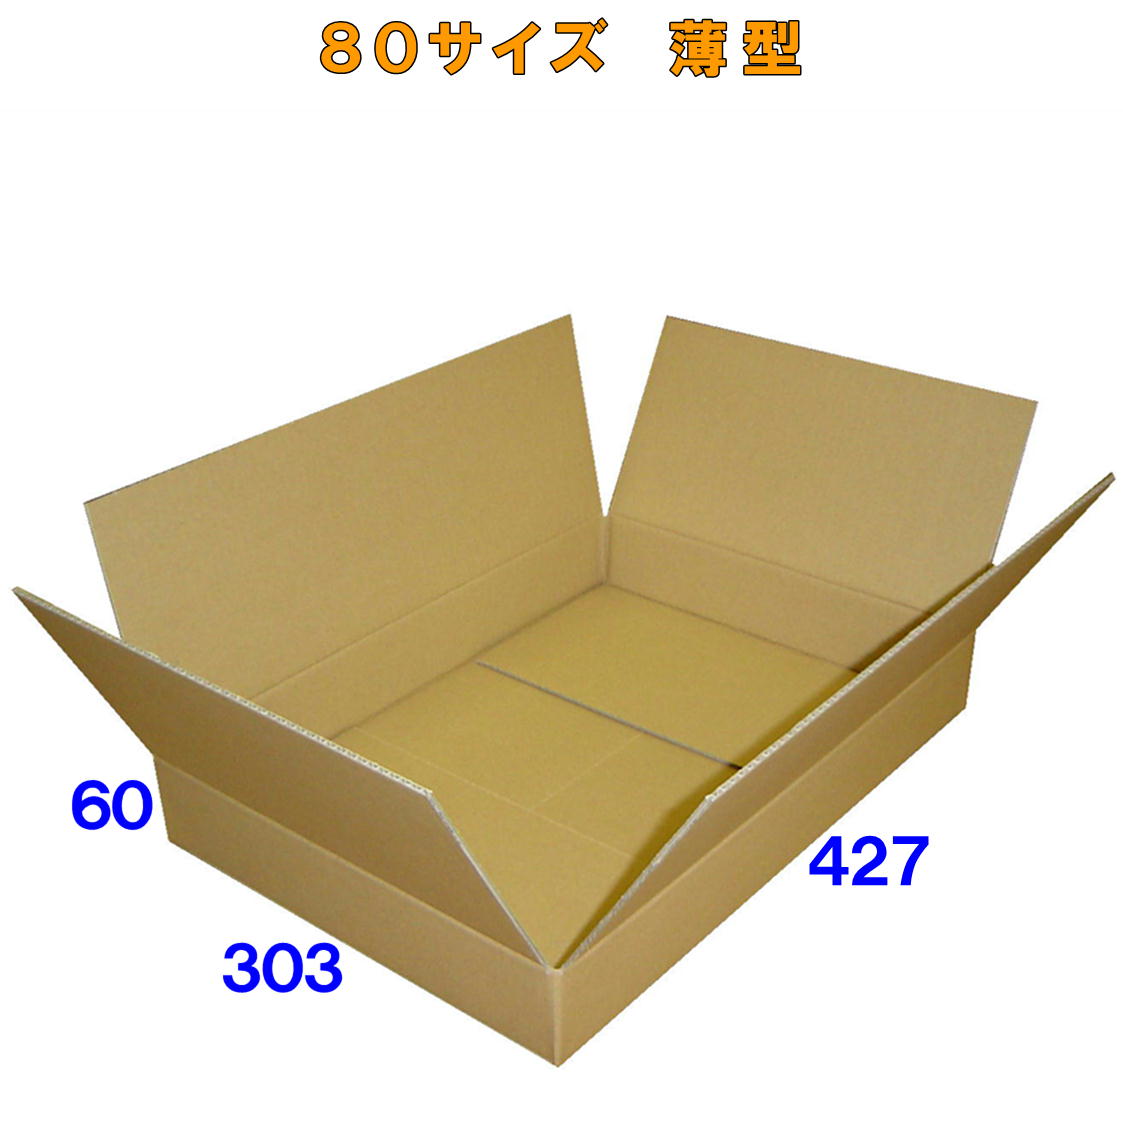 最も ダンボール 箱 80サイズ A3 薄型 20枚 3mm厚 427x303x60 段ボール 80 宅配 梱包 通販 資材 用 セット 日本